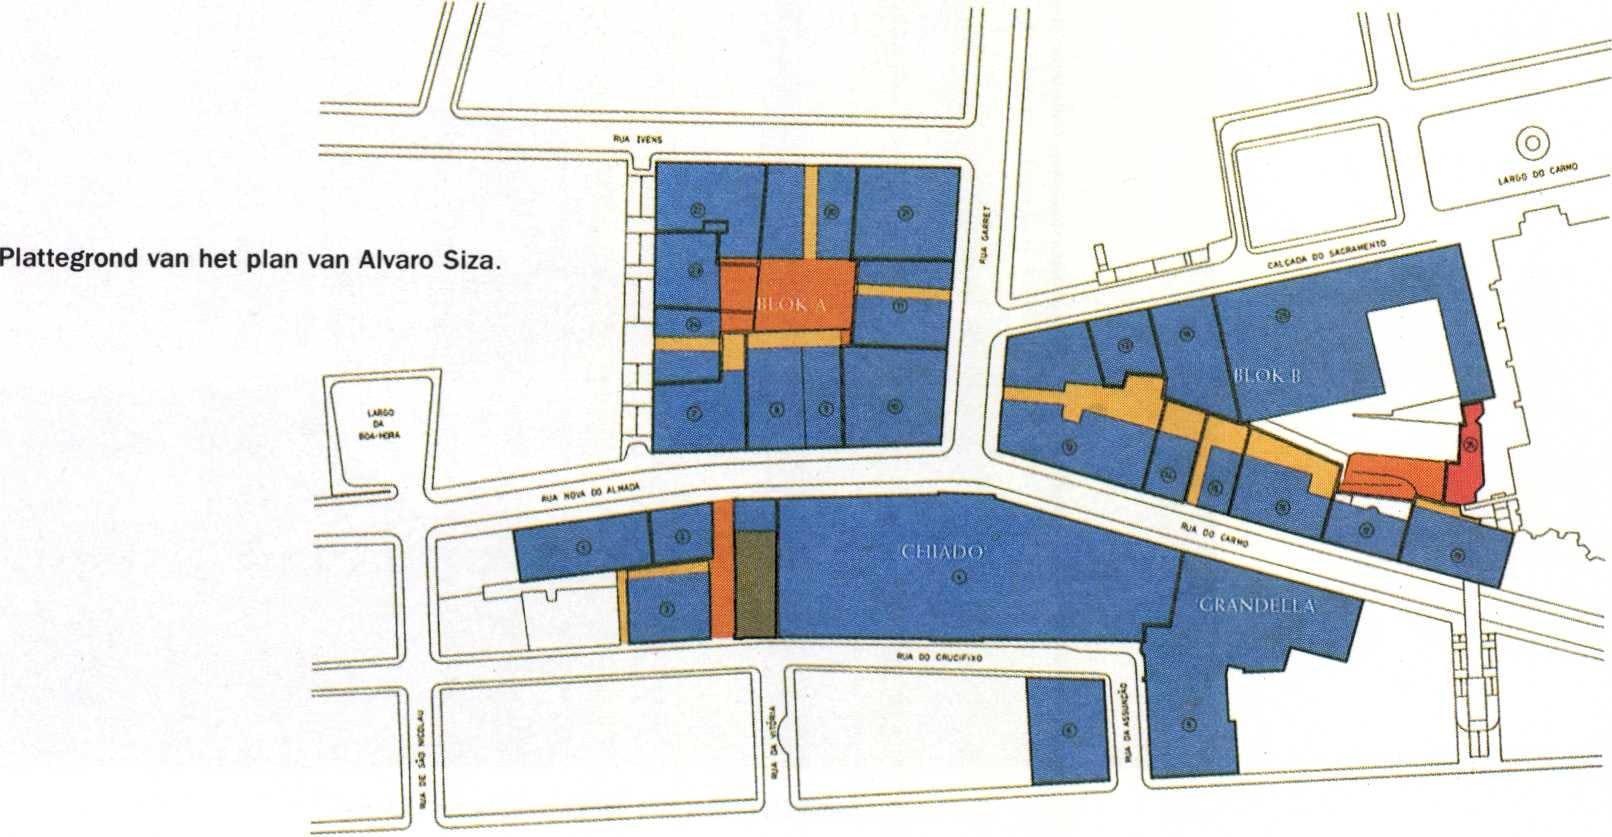 Plattegrond van het plan van Alvaro Siza.
Blauw: gebouwen binnen plangebied; oranje: publieke
zone; rood: af te breken gebouw ten behoeve
van publieke zone; roze: passage; bruin:
metro-toegang.